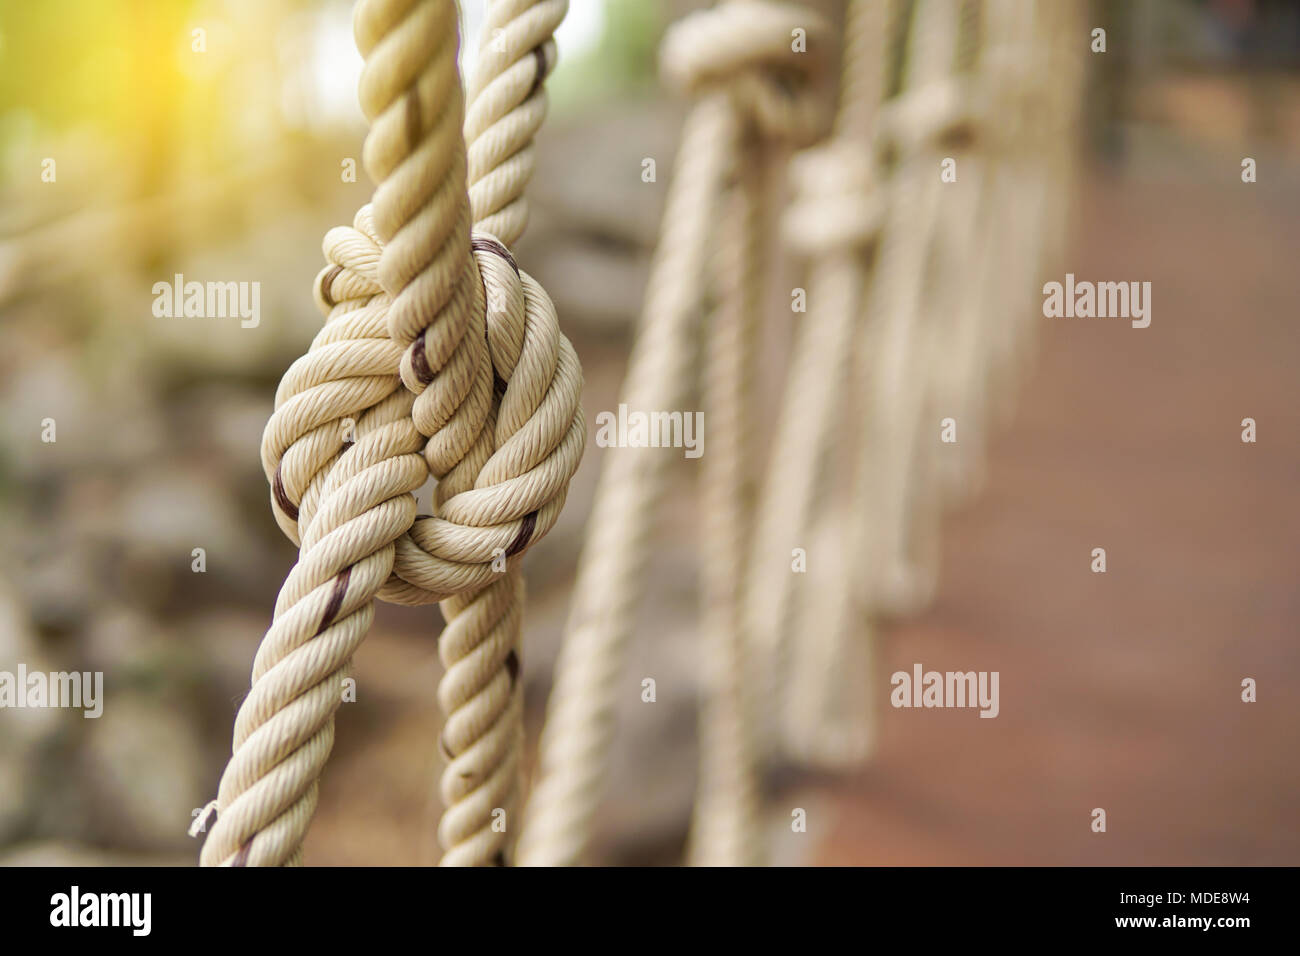 Close-up of rope knot line attachés ensemble avec un arrière-plan de pont. Corde blanche dans un noeud pour l'aventure.Corde, attachez un noeud lié à un maillage de poteau de métal Banque D'Images